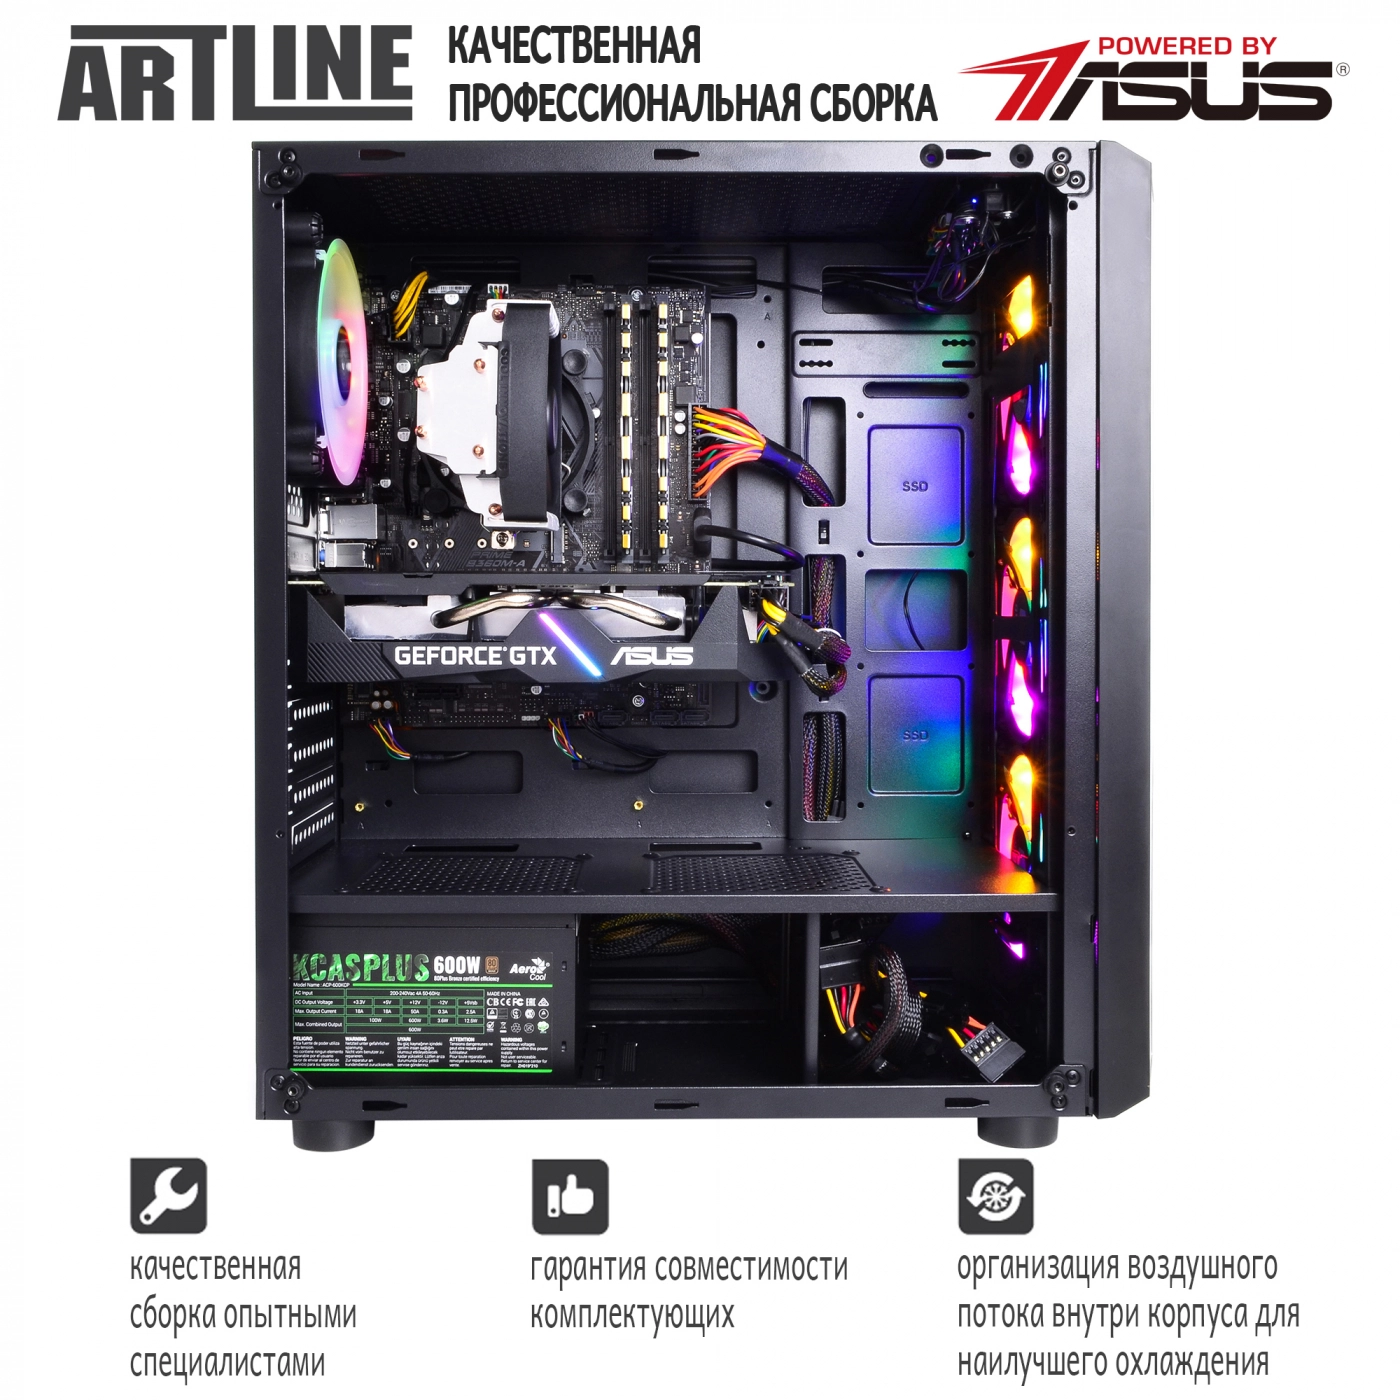 Купить Компьютер ARTLINE Gaming X68v05 - фото 9